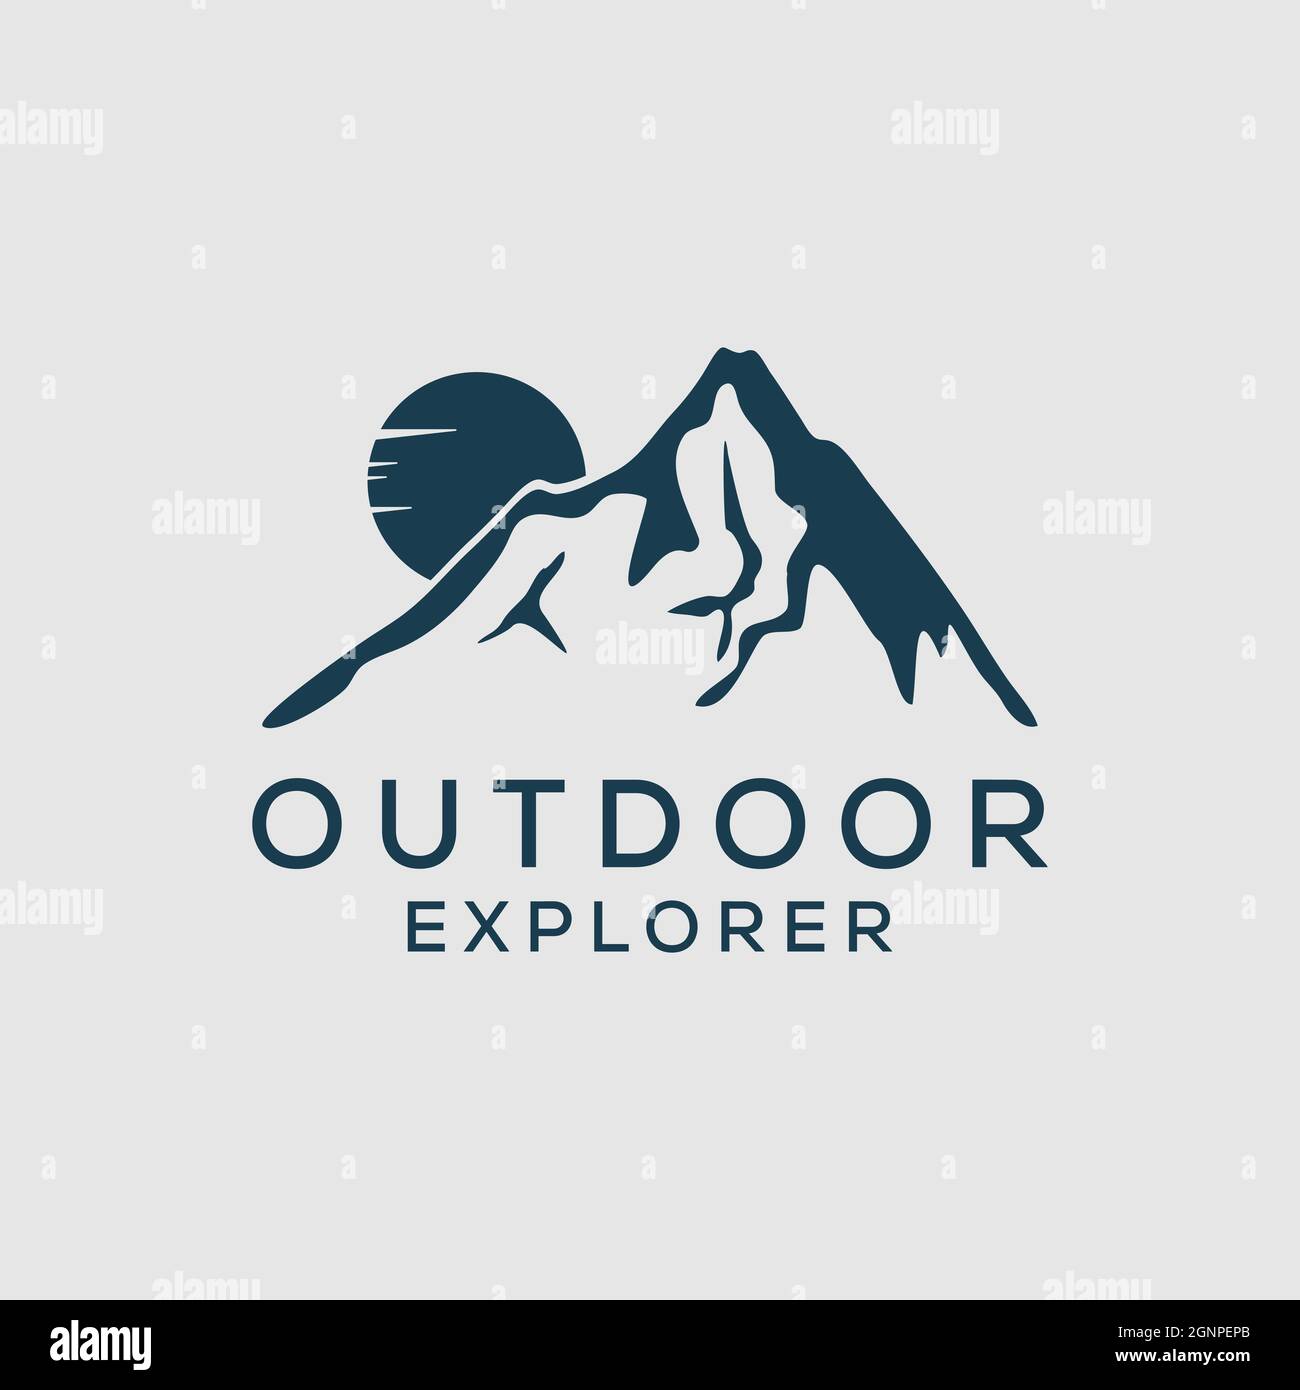 Mountain outdoor explorer logo design vector, night outdoor landscape logo template Stock Vector